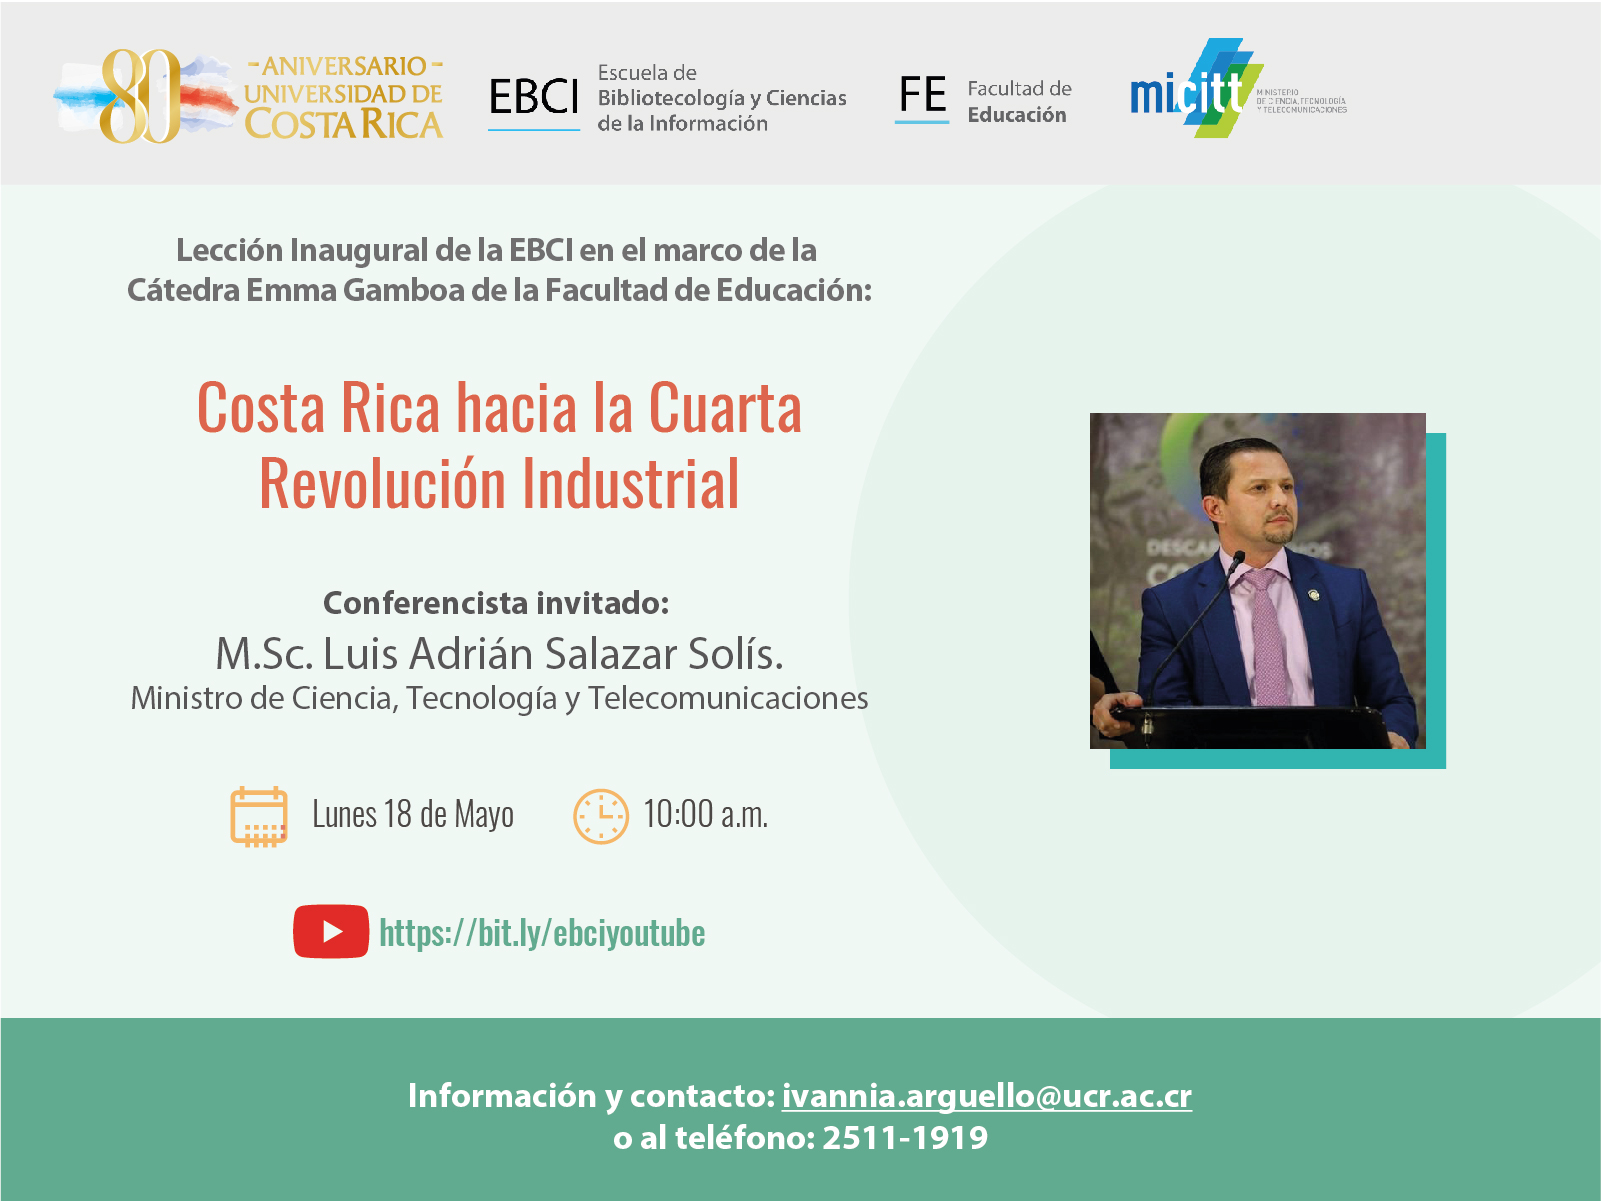 Cátedra Emma Gamboa: Conferencia inaugural EBCI "Costa Rica hacia la cuarta Revolución Industrial"